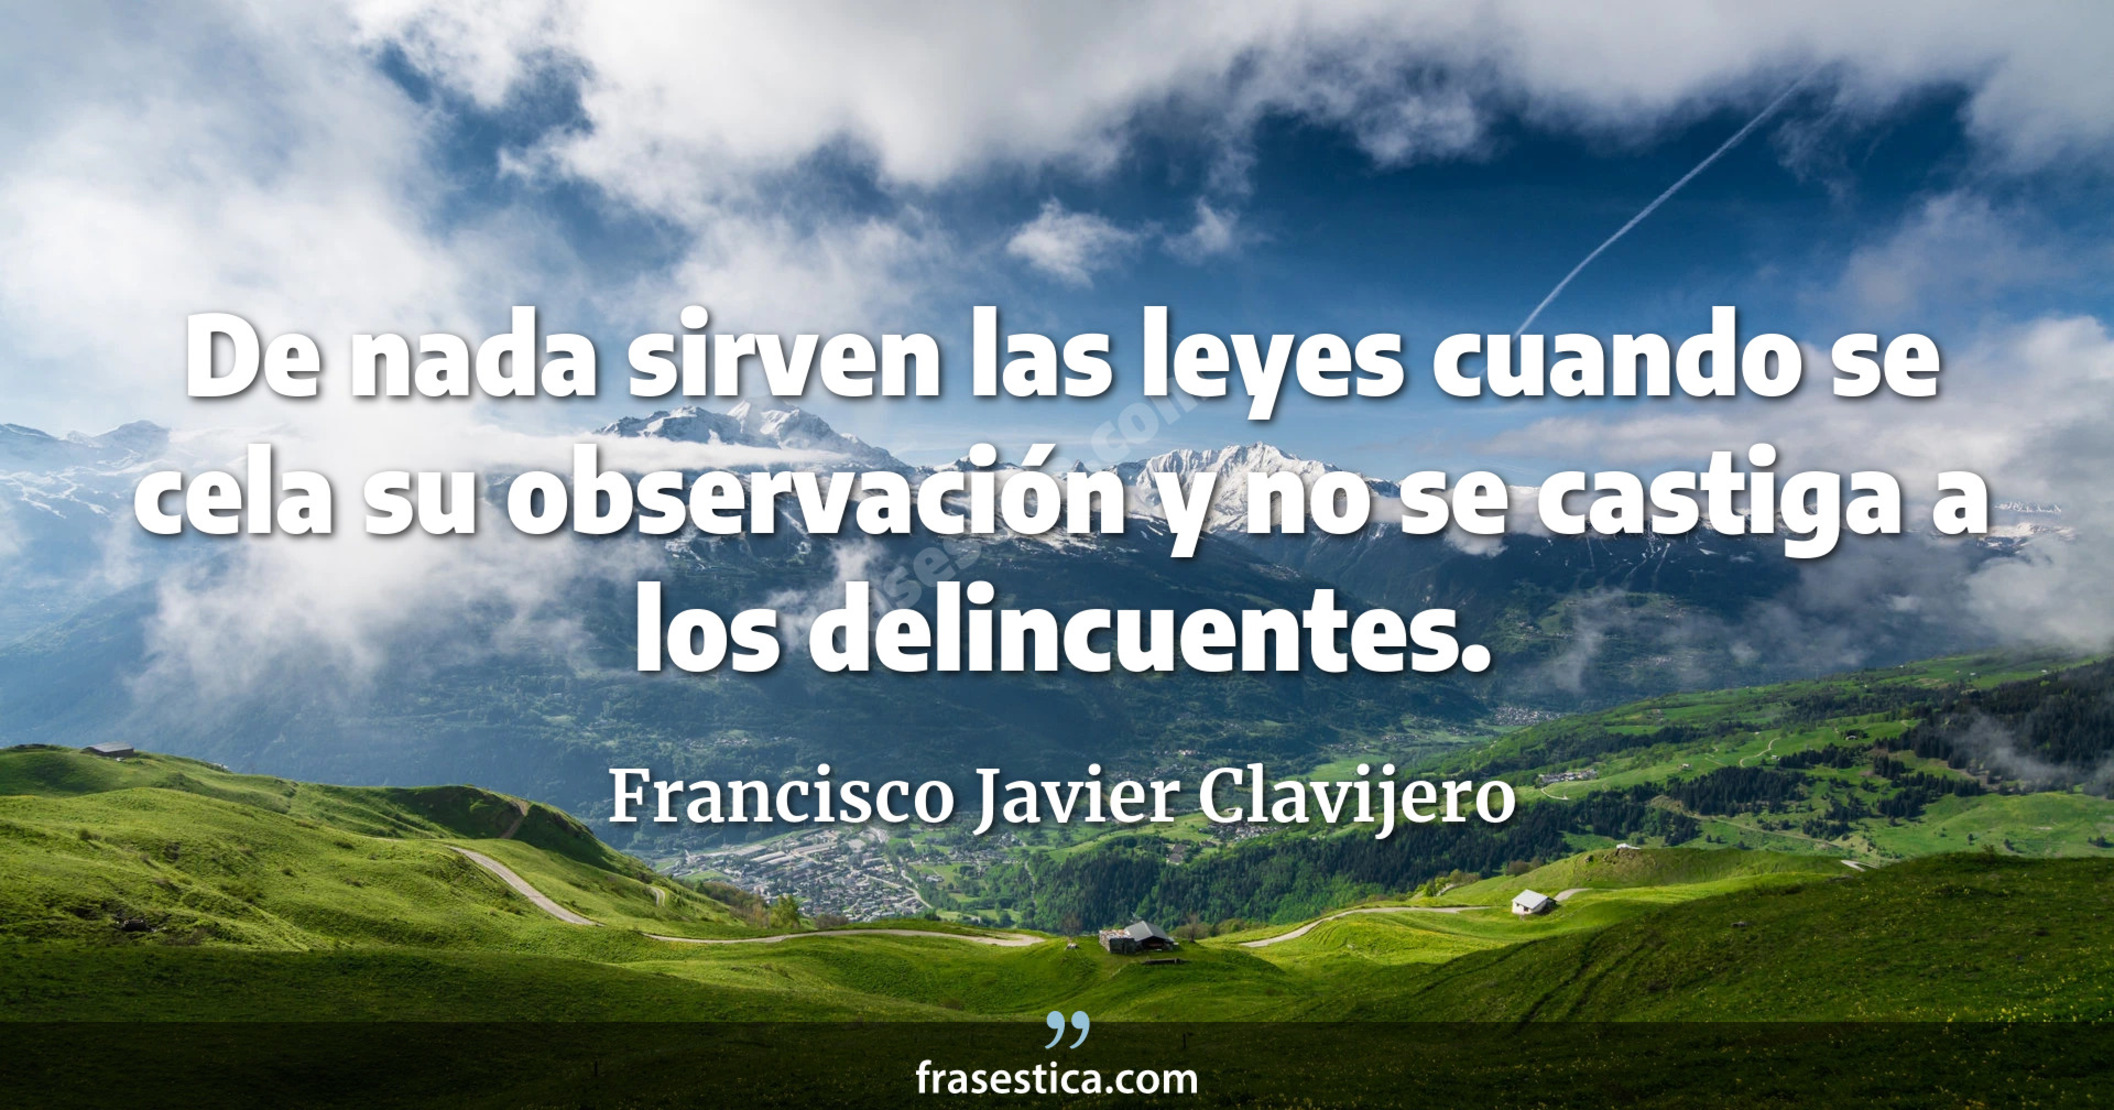 De nada sirven las leyes cuando se cela su observación y no se castiga a los delincuentes. - Francisco Javier Clavijero